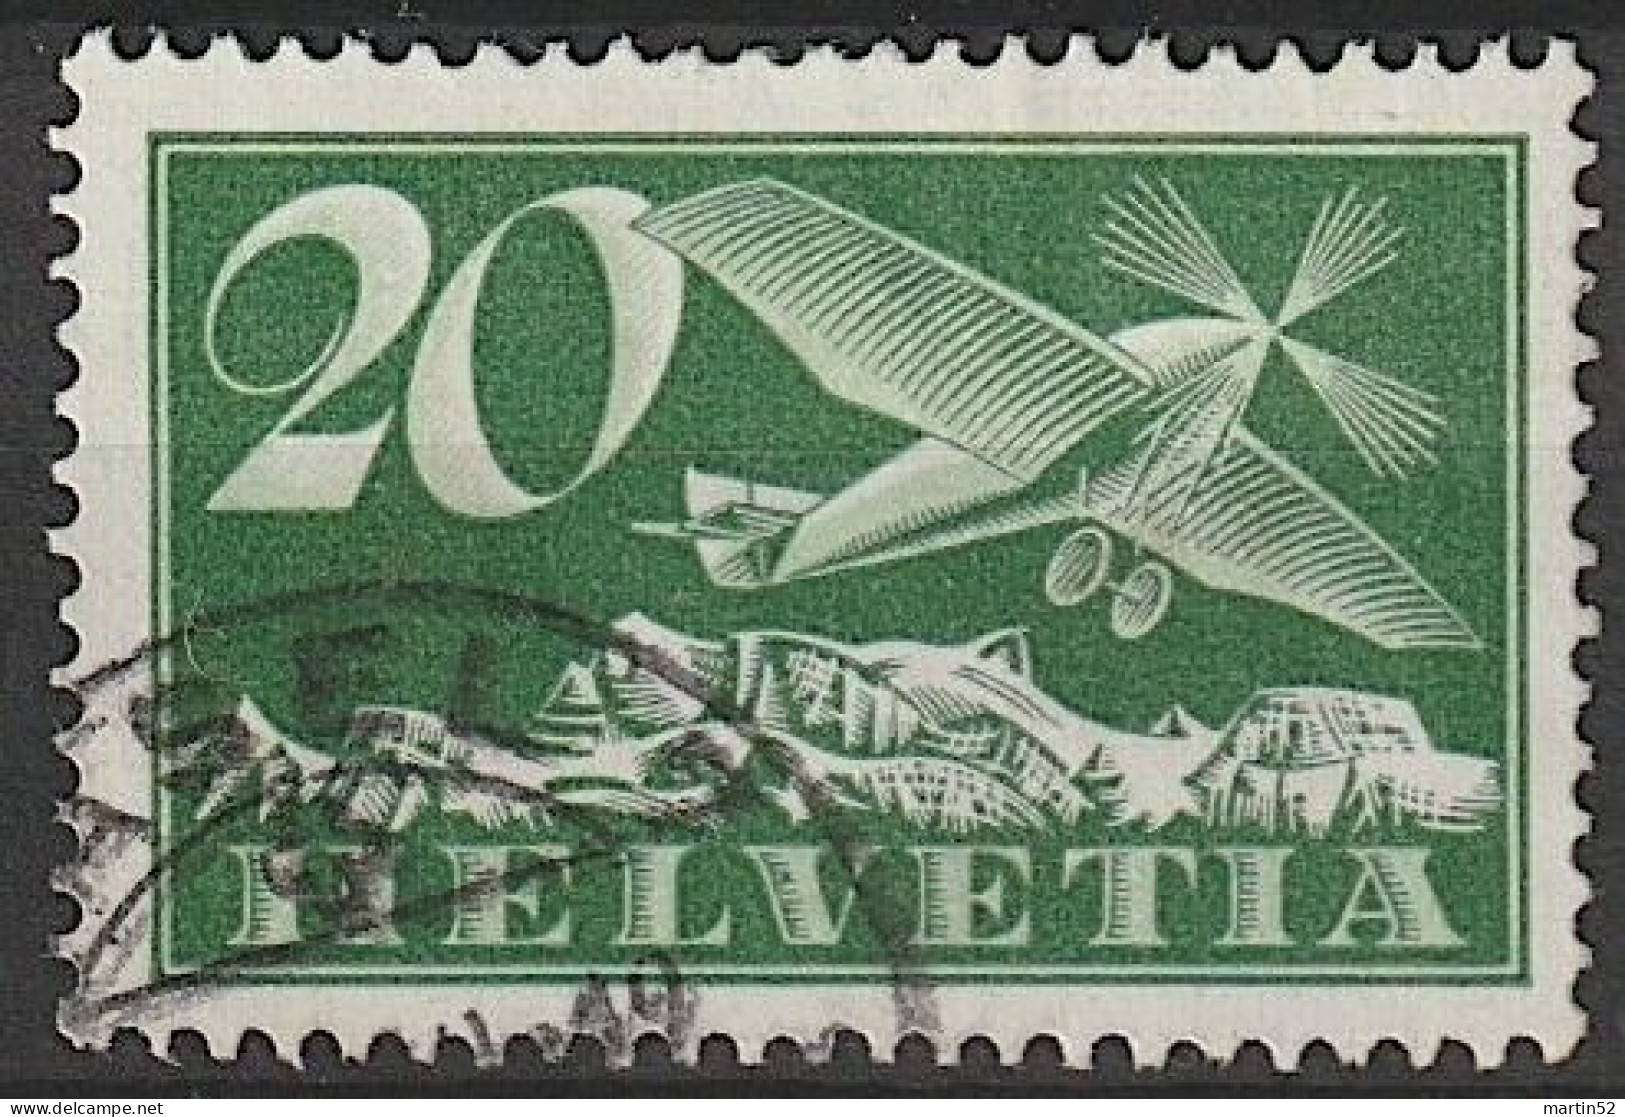 Schweiz Suisse 1925: Alpen-Flug / Avion Et Alpes Zu Flug 4 Mi 213 Yv PA 9 Mit Eck-Stempel Von BASEL 19 (Zu CHF 11.00) - Oblitérés